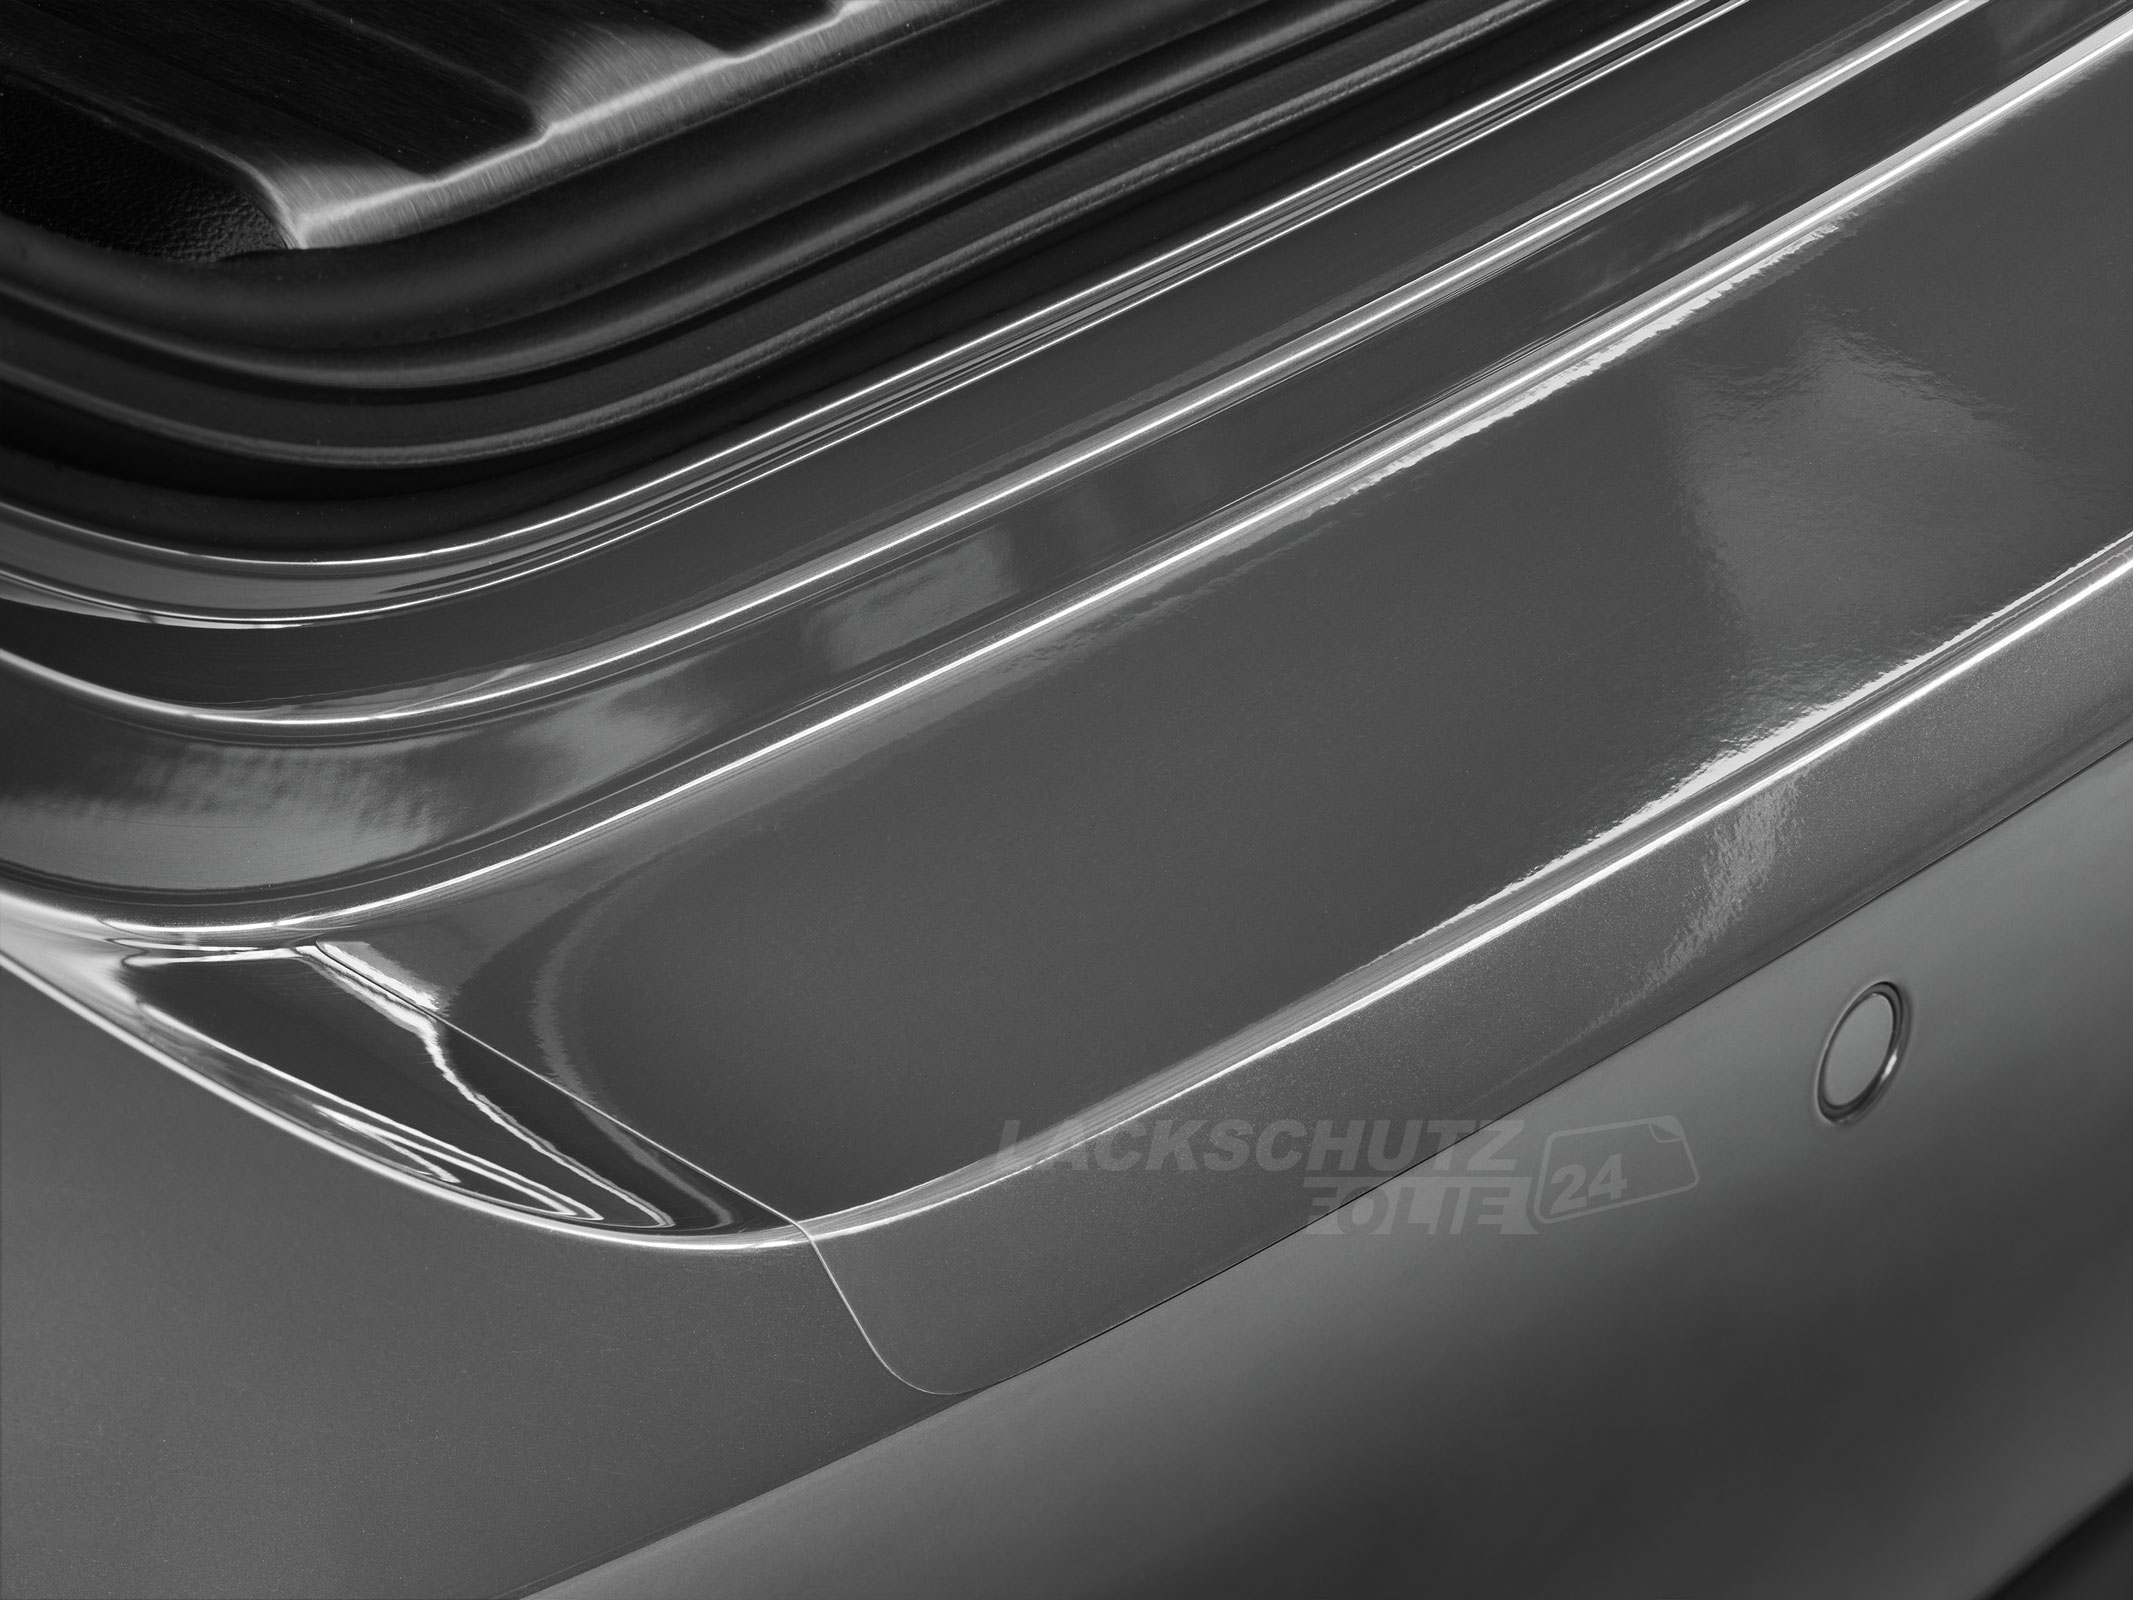 Ladekantenschutzfolie - Transparent Glatt Hochglänzend 150 µm stark für Mitsubishi Outlander (III) Typ CWo, Facelift,  ab BJ 2015